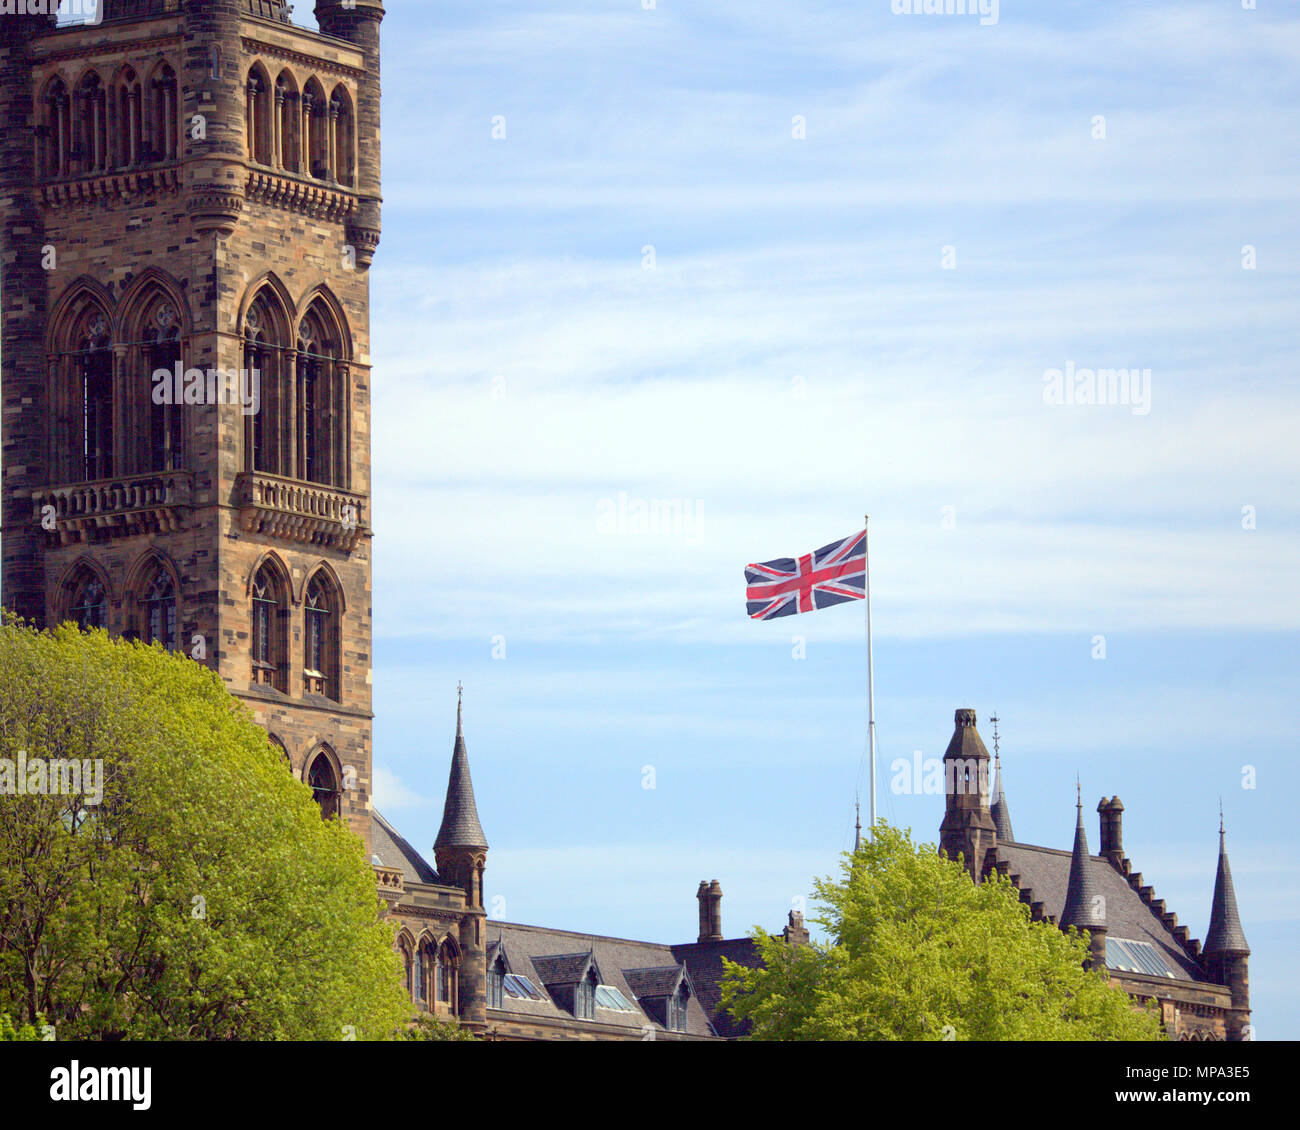 Universidad de Glasgow enarbolar la bandera de la Unión en el marco de la celebración de la Boda Real inusual para un nacionalista ciudad parque Kelvingrove.Cerca de la torre del reloj Foto de stock